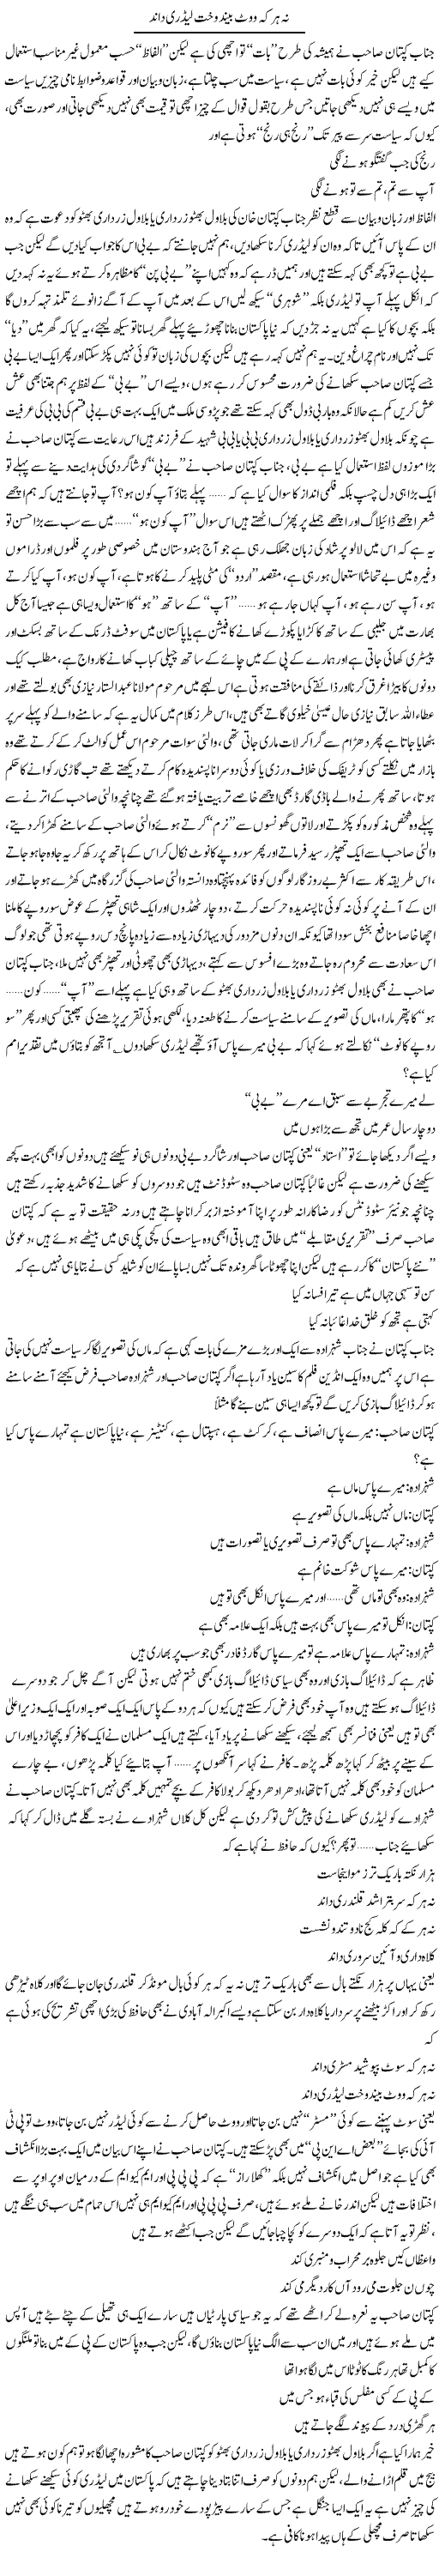 Na Har Ke Vote Beenend Wakht Lidri Dand | Saad Ullah Jan Barq | Daily Urdu Columns